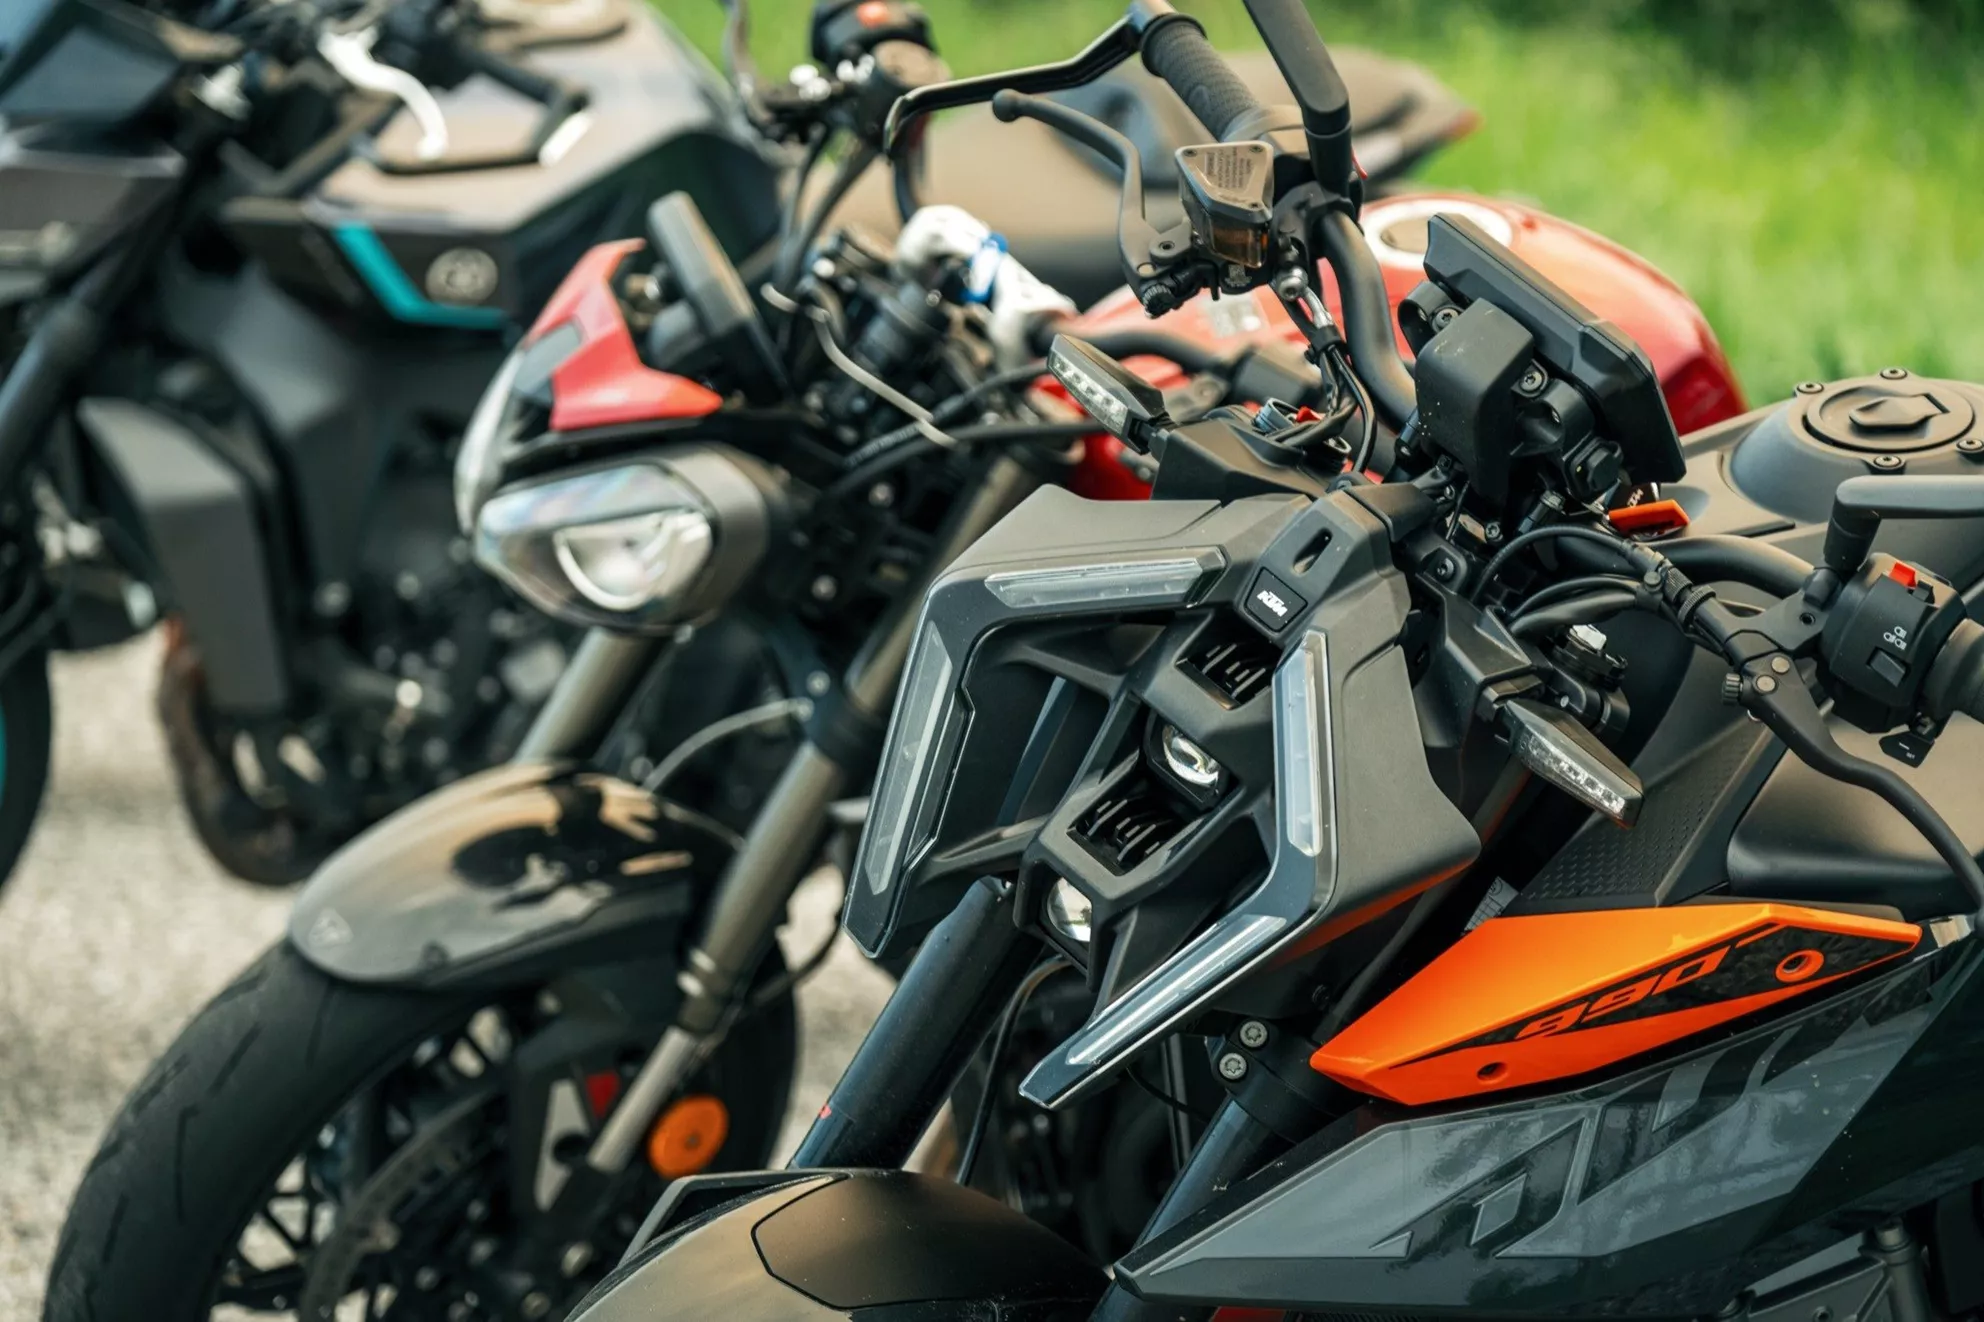 '10 nahých motocyklů v testu! S námi: Nová KTM 990 Duke!'